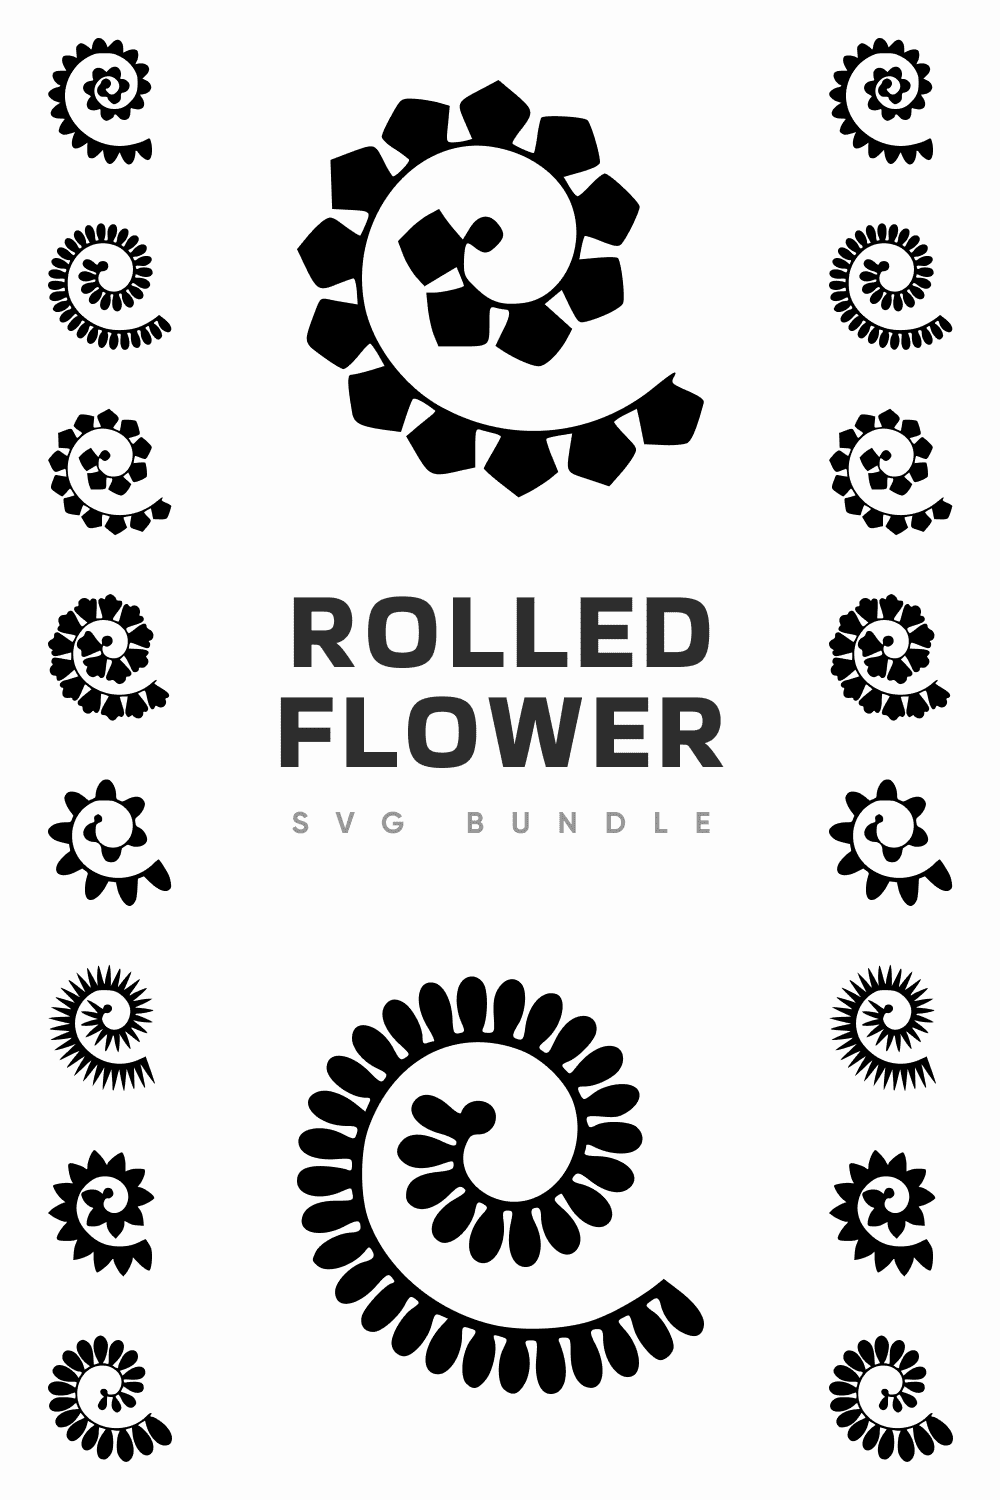 rolled flower svg bundle pinterest image.